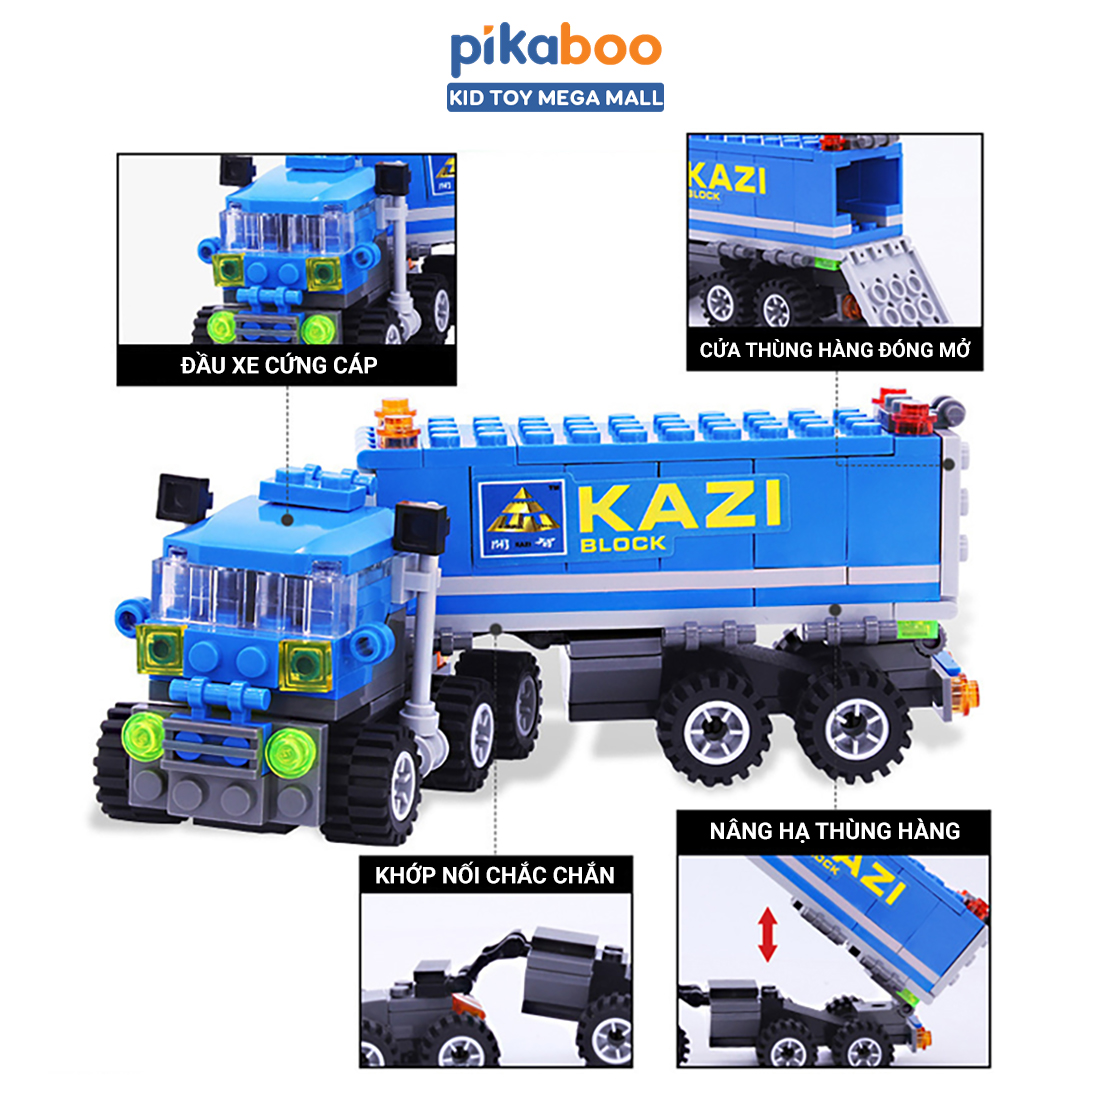 Đồ chơi lắp ráp xếp hình lego xe tải chở hàng Pikaboo 163 chi tiết bằng nhựa ABS cao cấp...